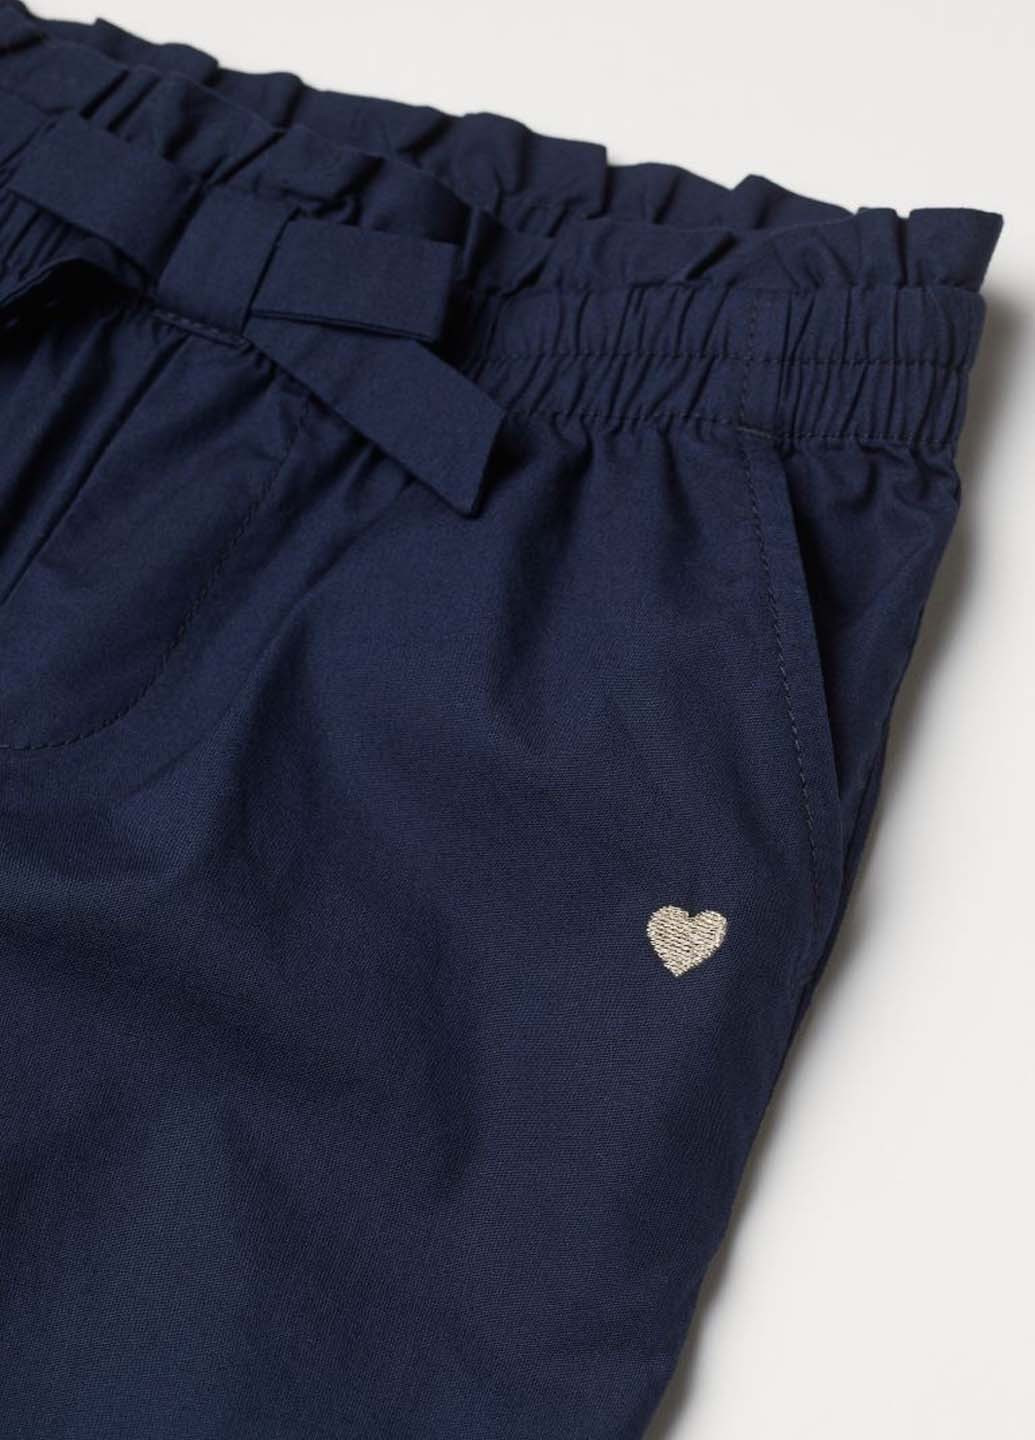 Темно-синие джинсовые демисезонные брюки H&M